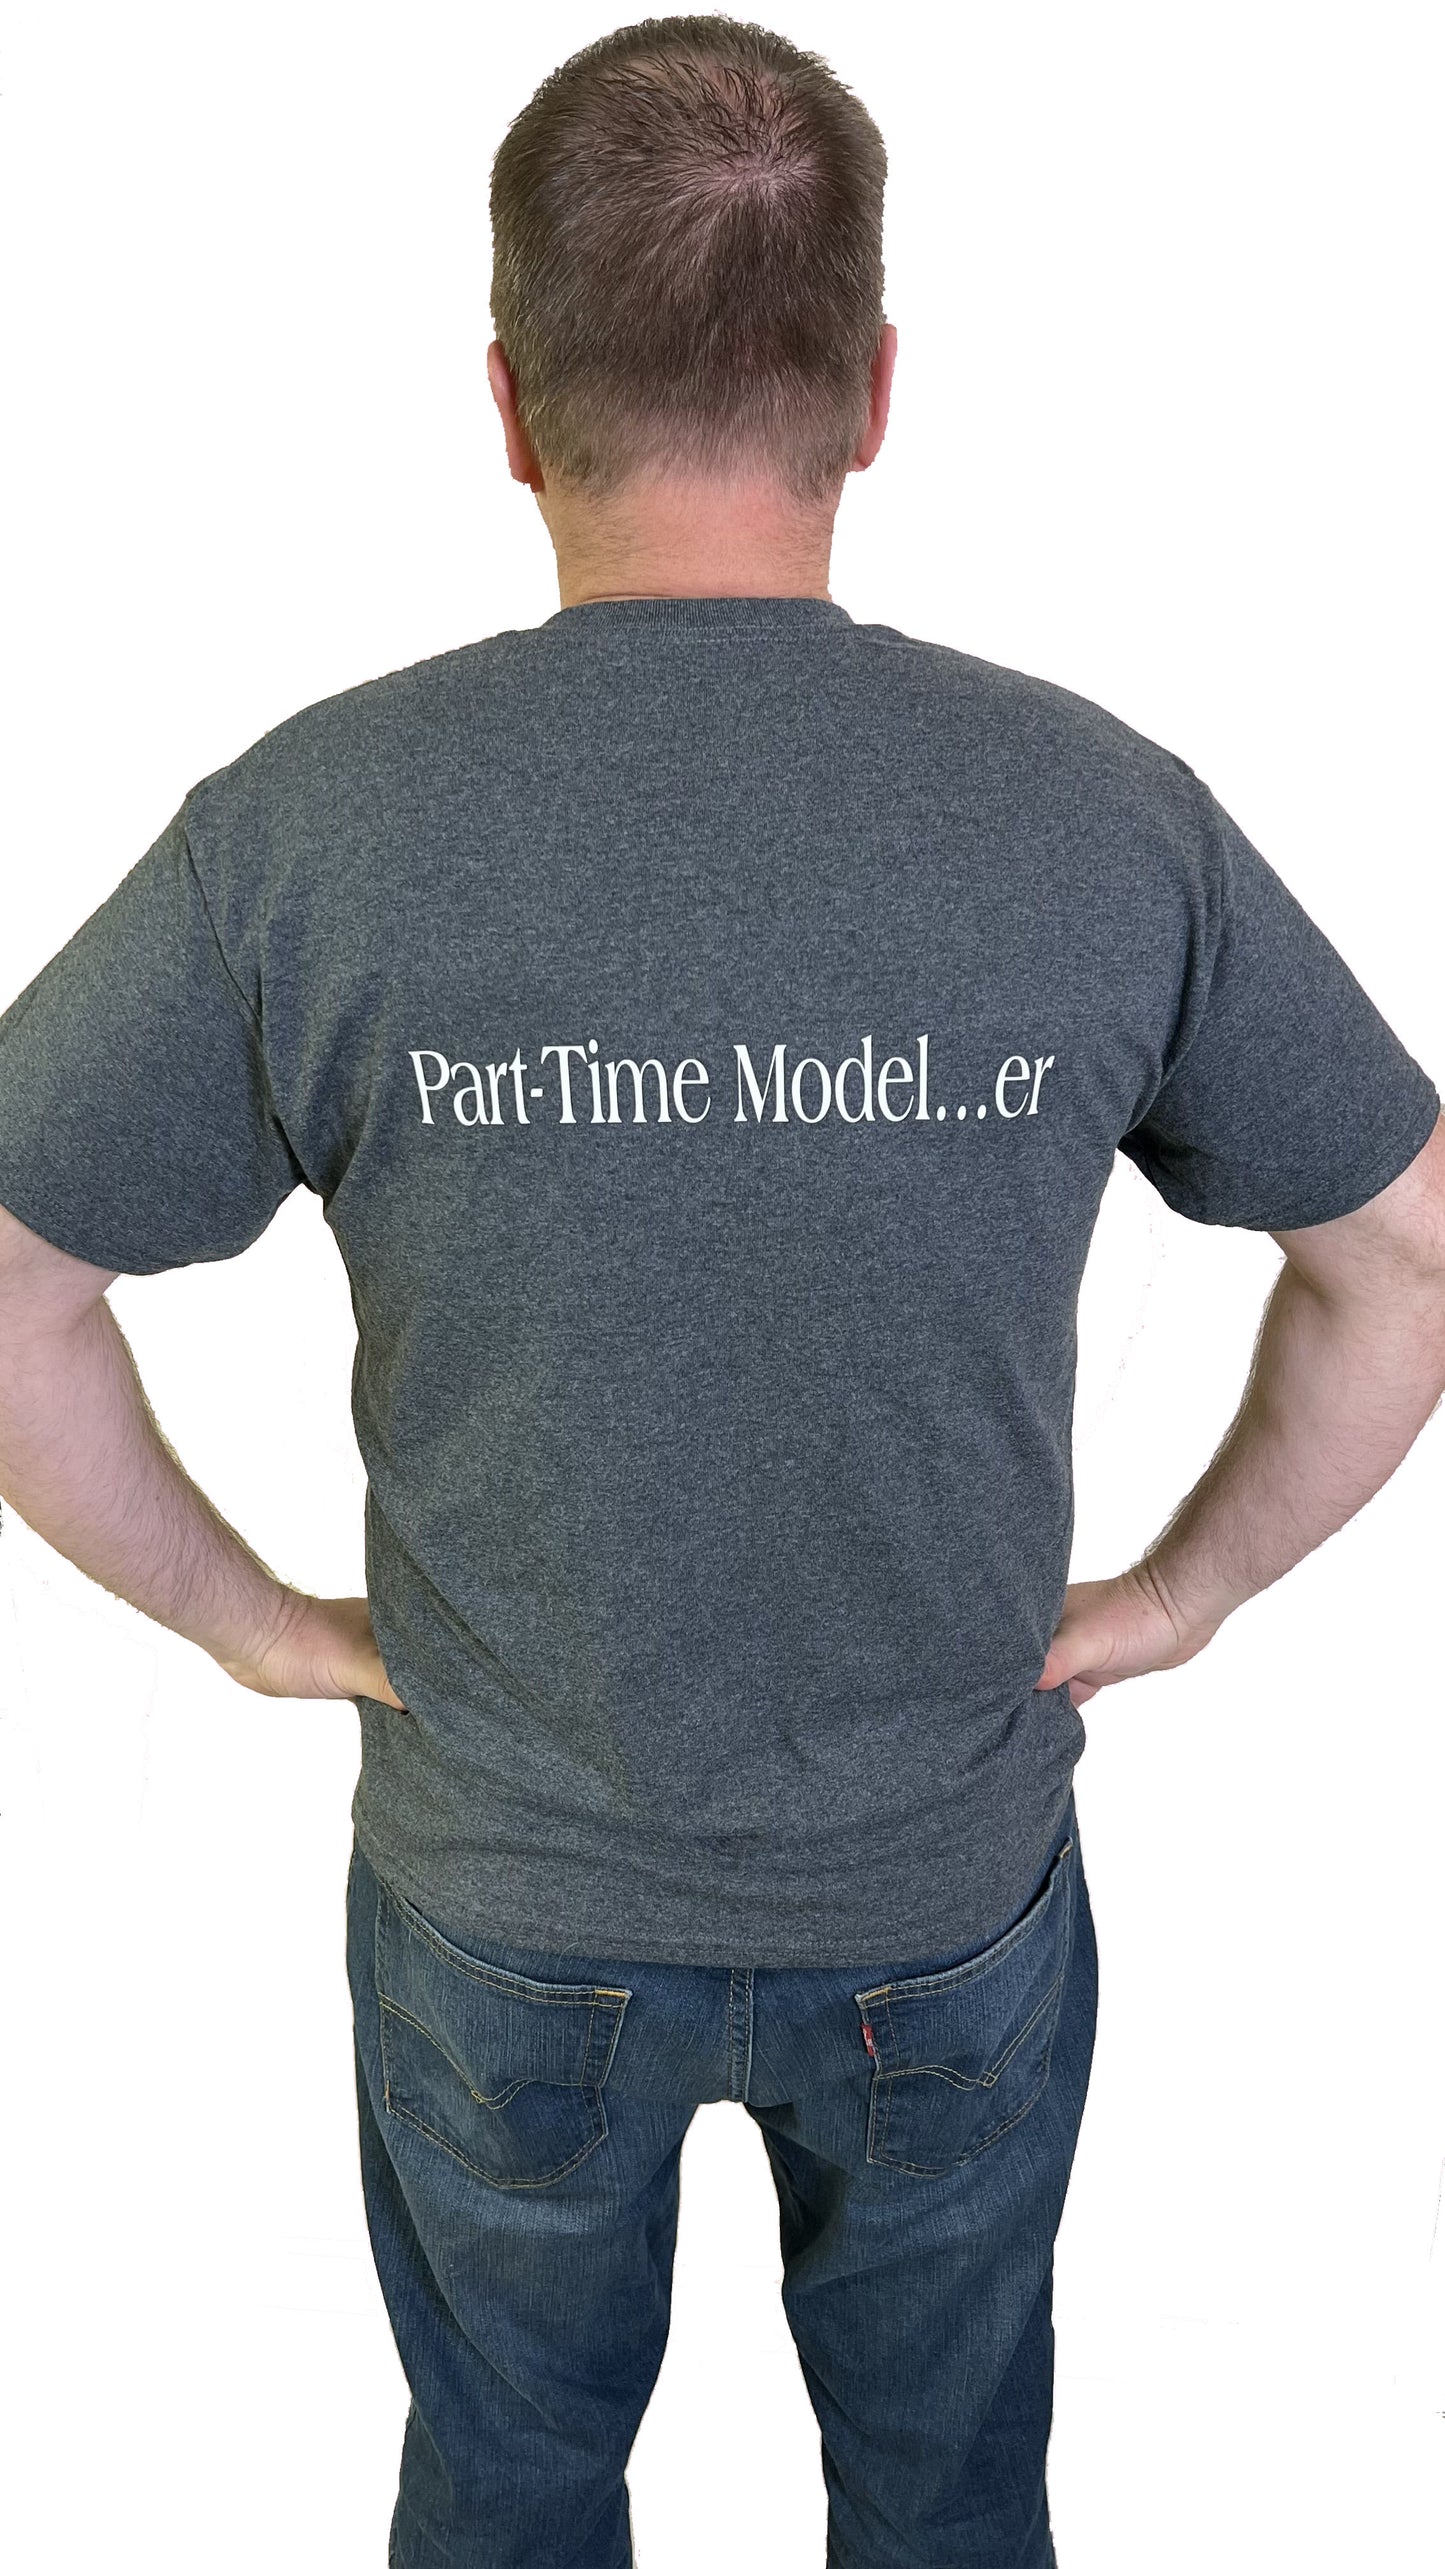 MWMS Modeler Shirt